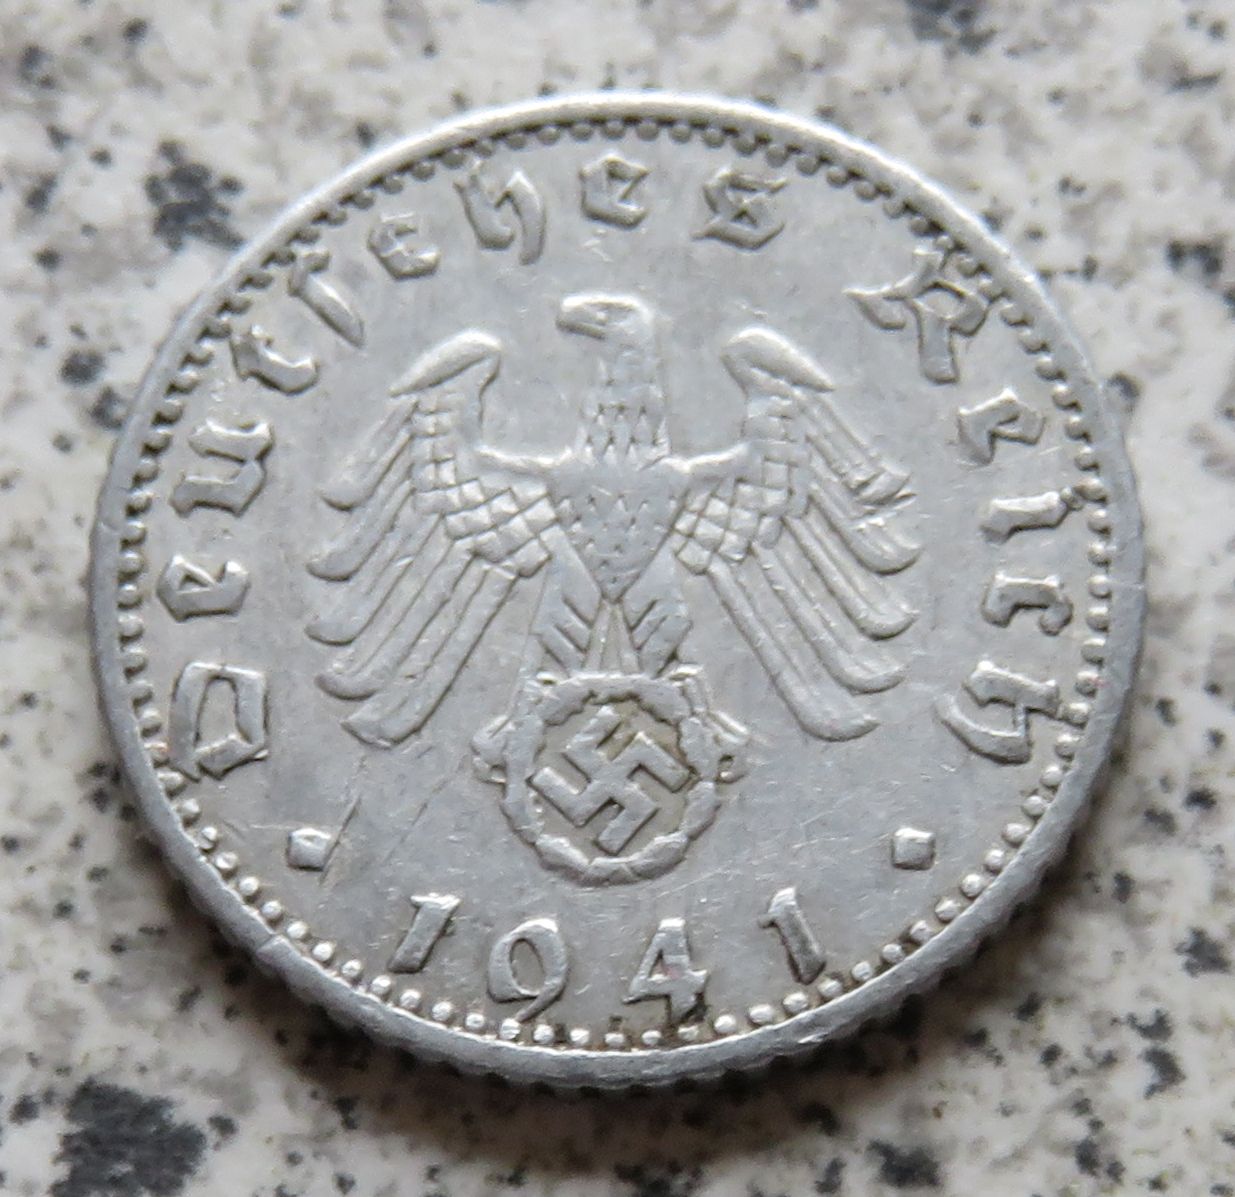  Drittes Reich 50 Reichspfennig 1941 A (3)   